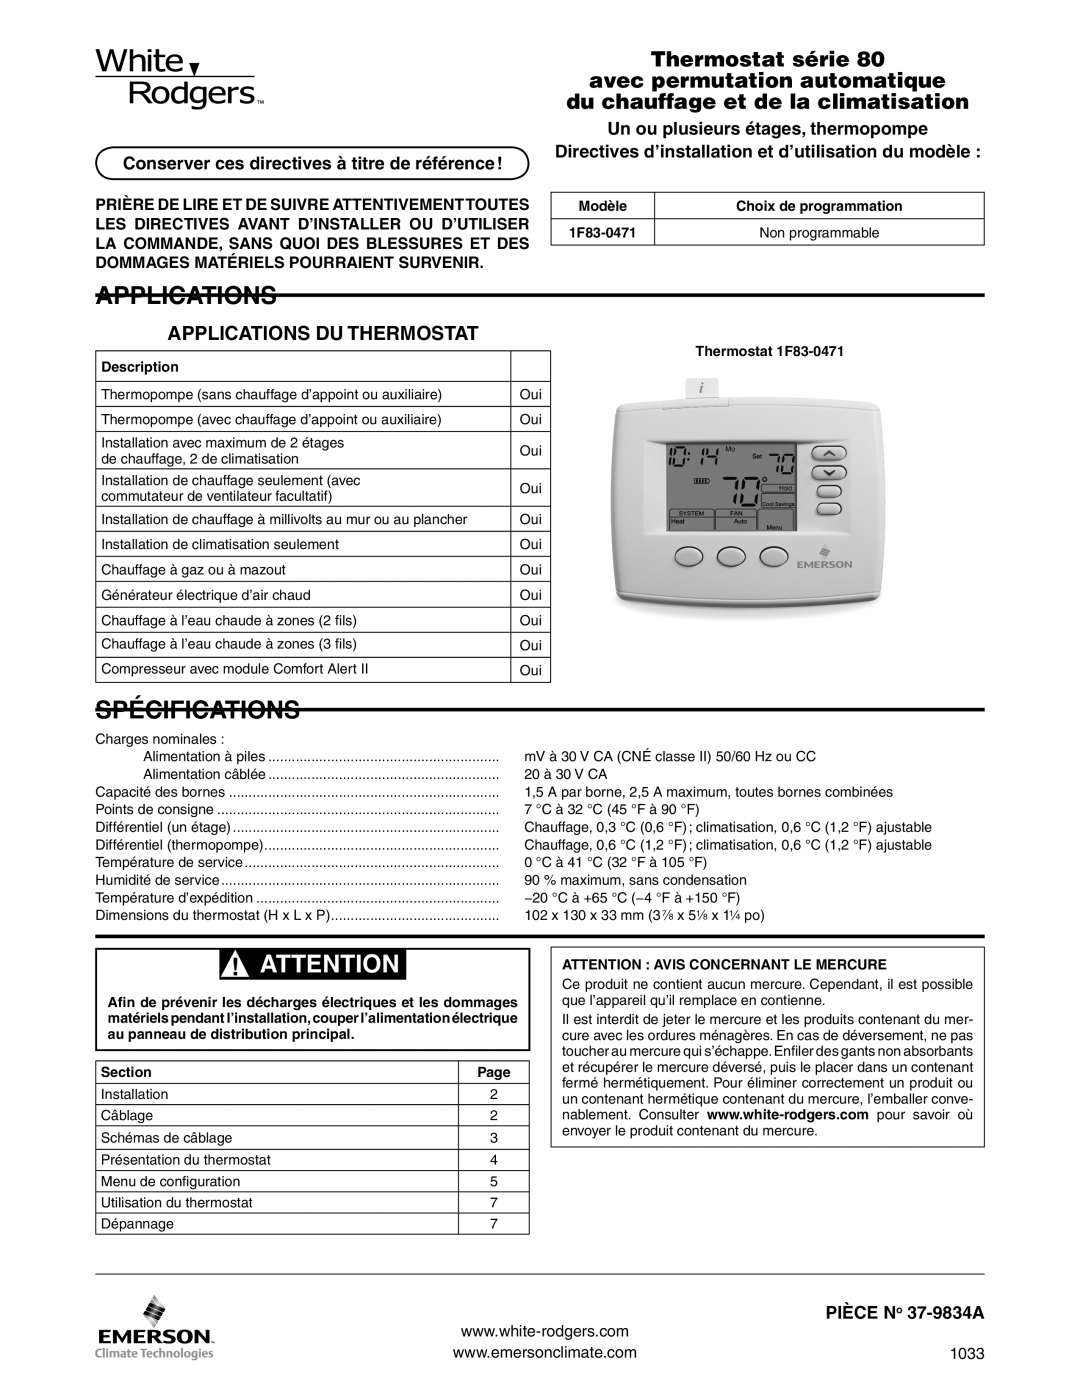 White Rodgers 1f83-0471 dimensions Spécifications, Applications Du Thermostat, du chauffage et de la climatisation 